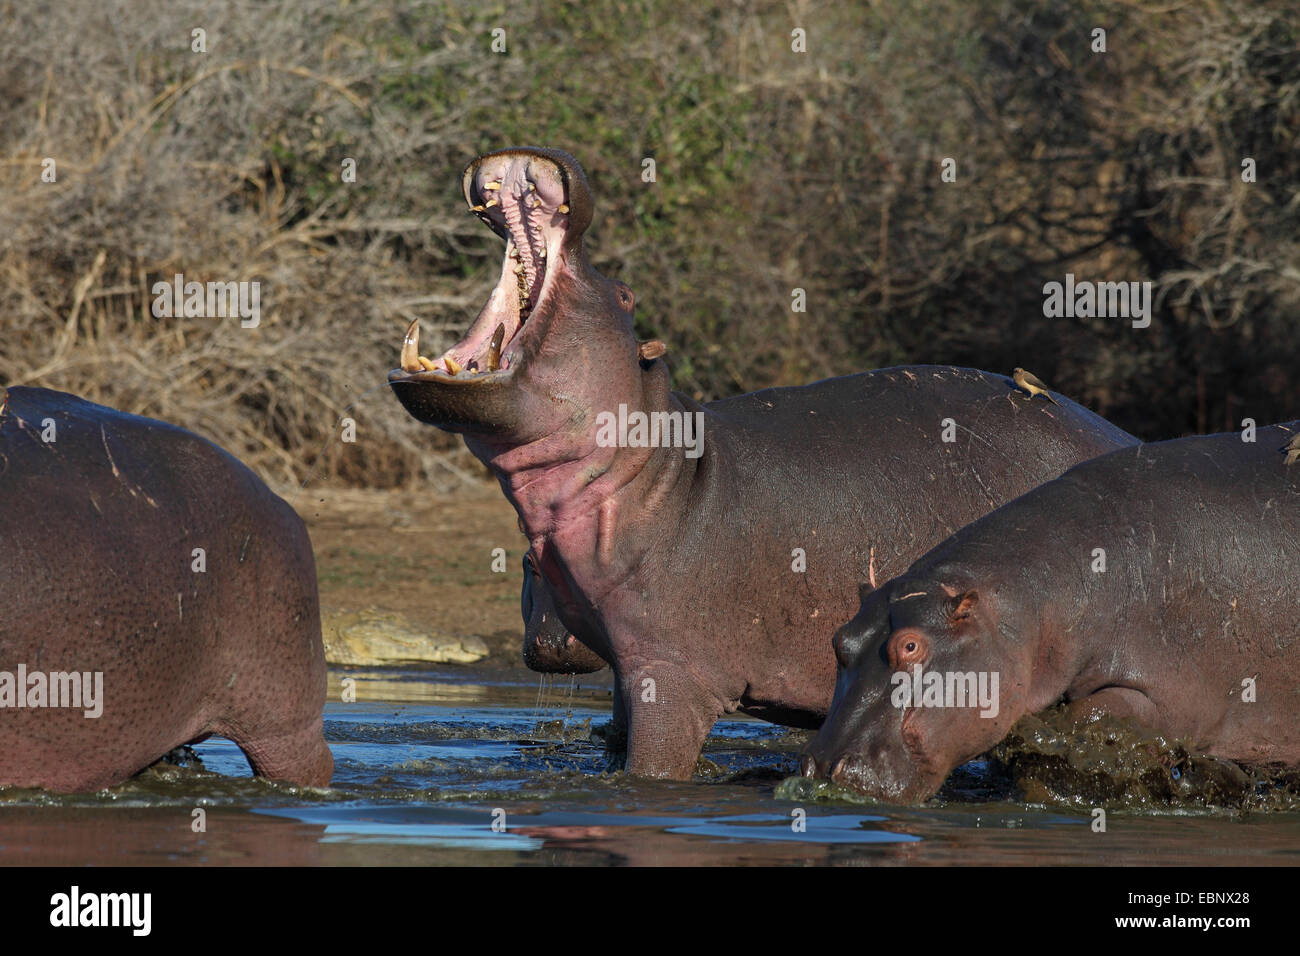 Nilpferd, Nilpferd, gemeinsame Flusspferd (Hippopotamus Amphibius), erwachsenes Tier mit einem offenem Mund stehen im flachen Wasser, Südafrika, Kruger National Park Stockfoto